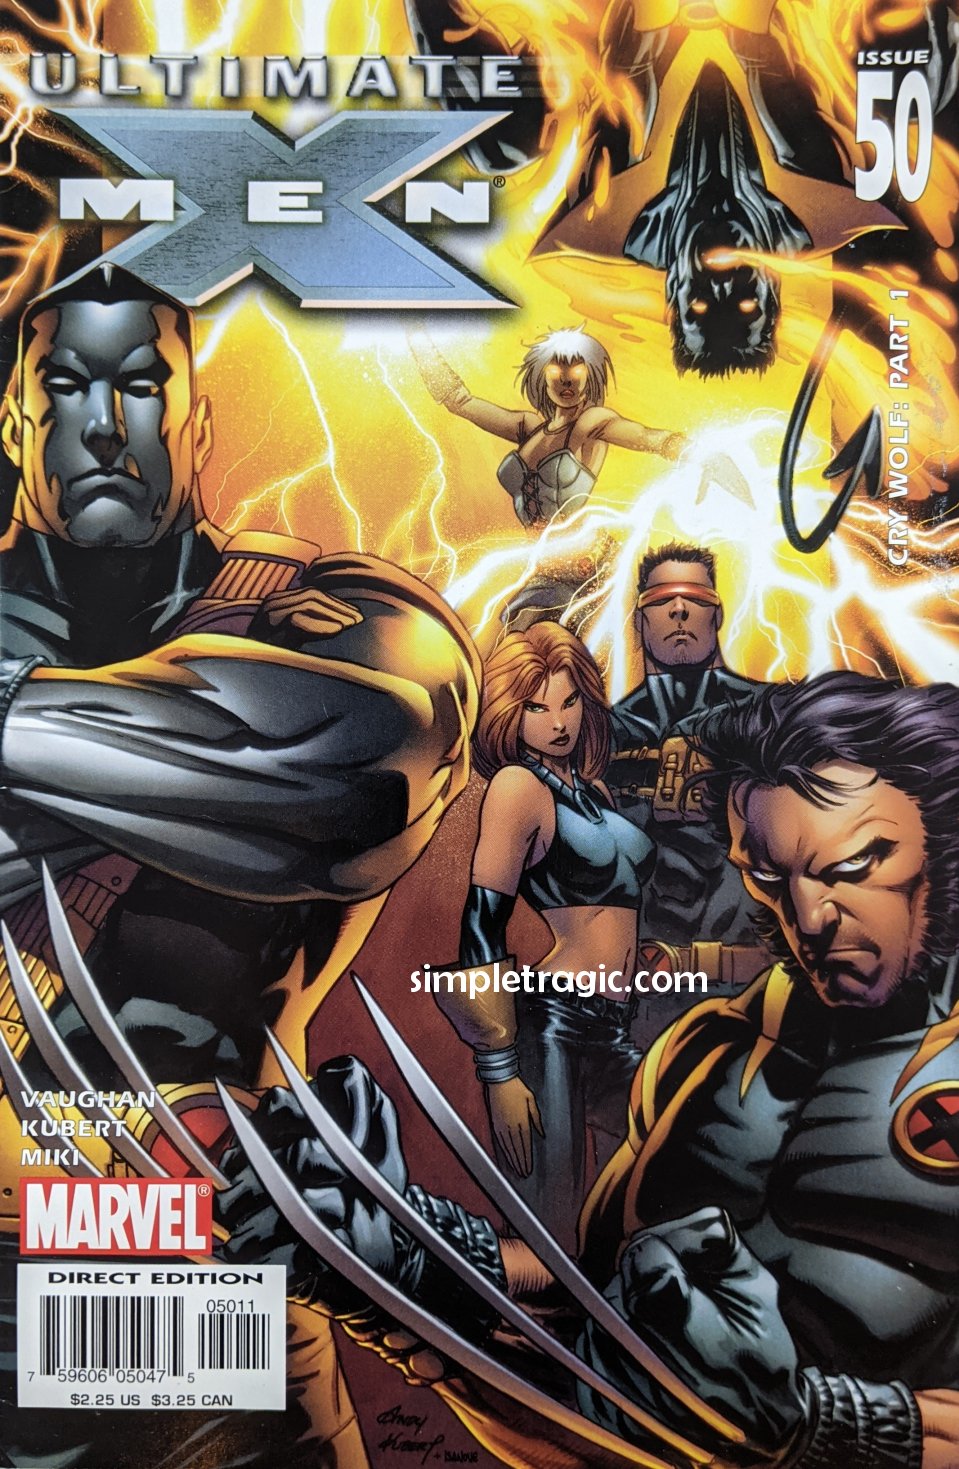 Ultimate X-Men #50 Comic Book Cover Art